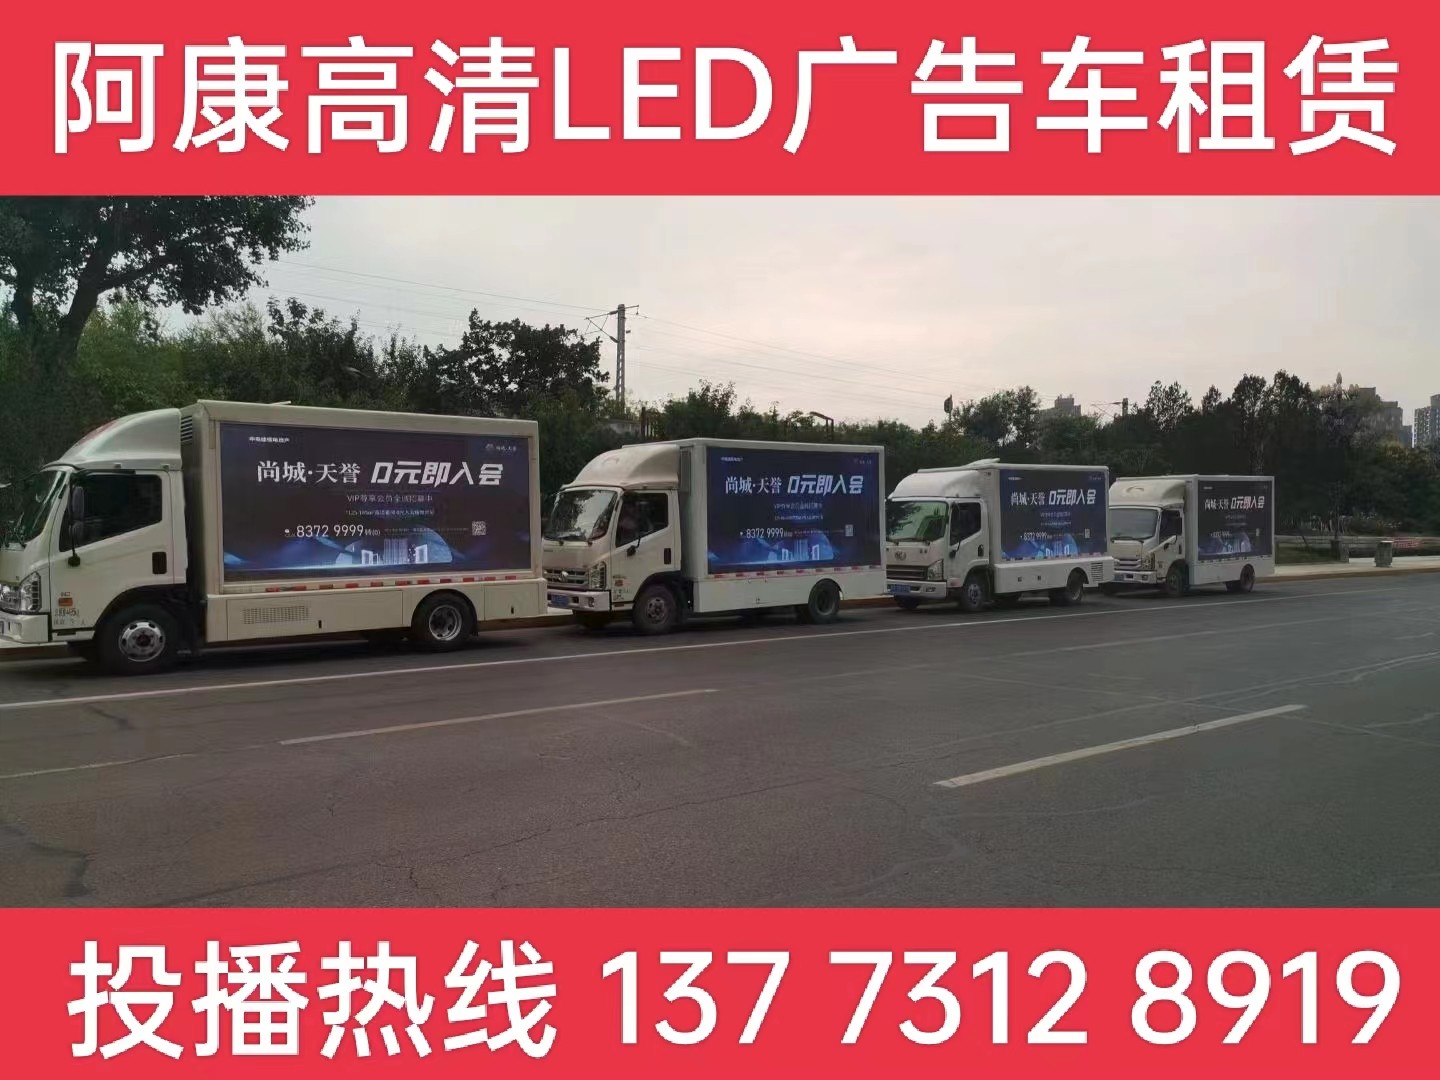 扬州LED广告车出租-某房产公司效果展示